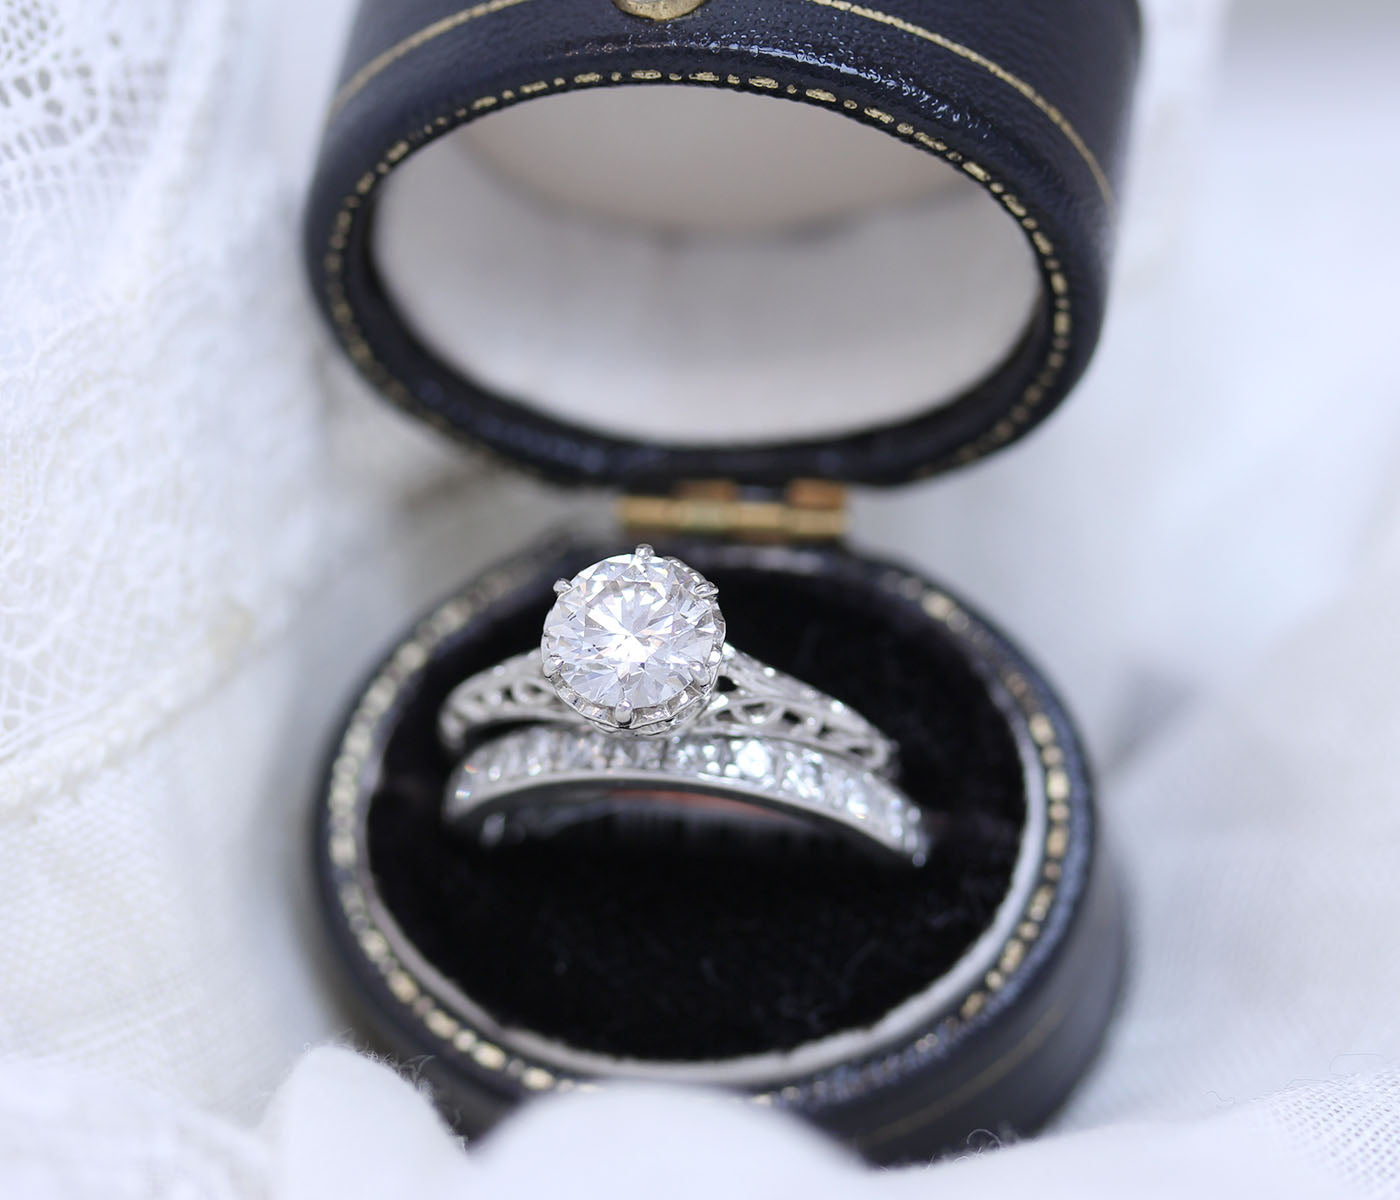 Replica Belle Epoque Engagement ring #1320-02 Default Title